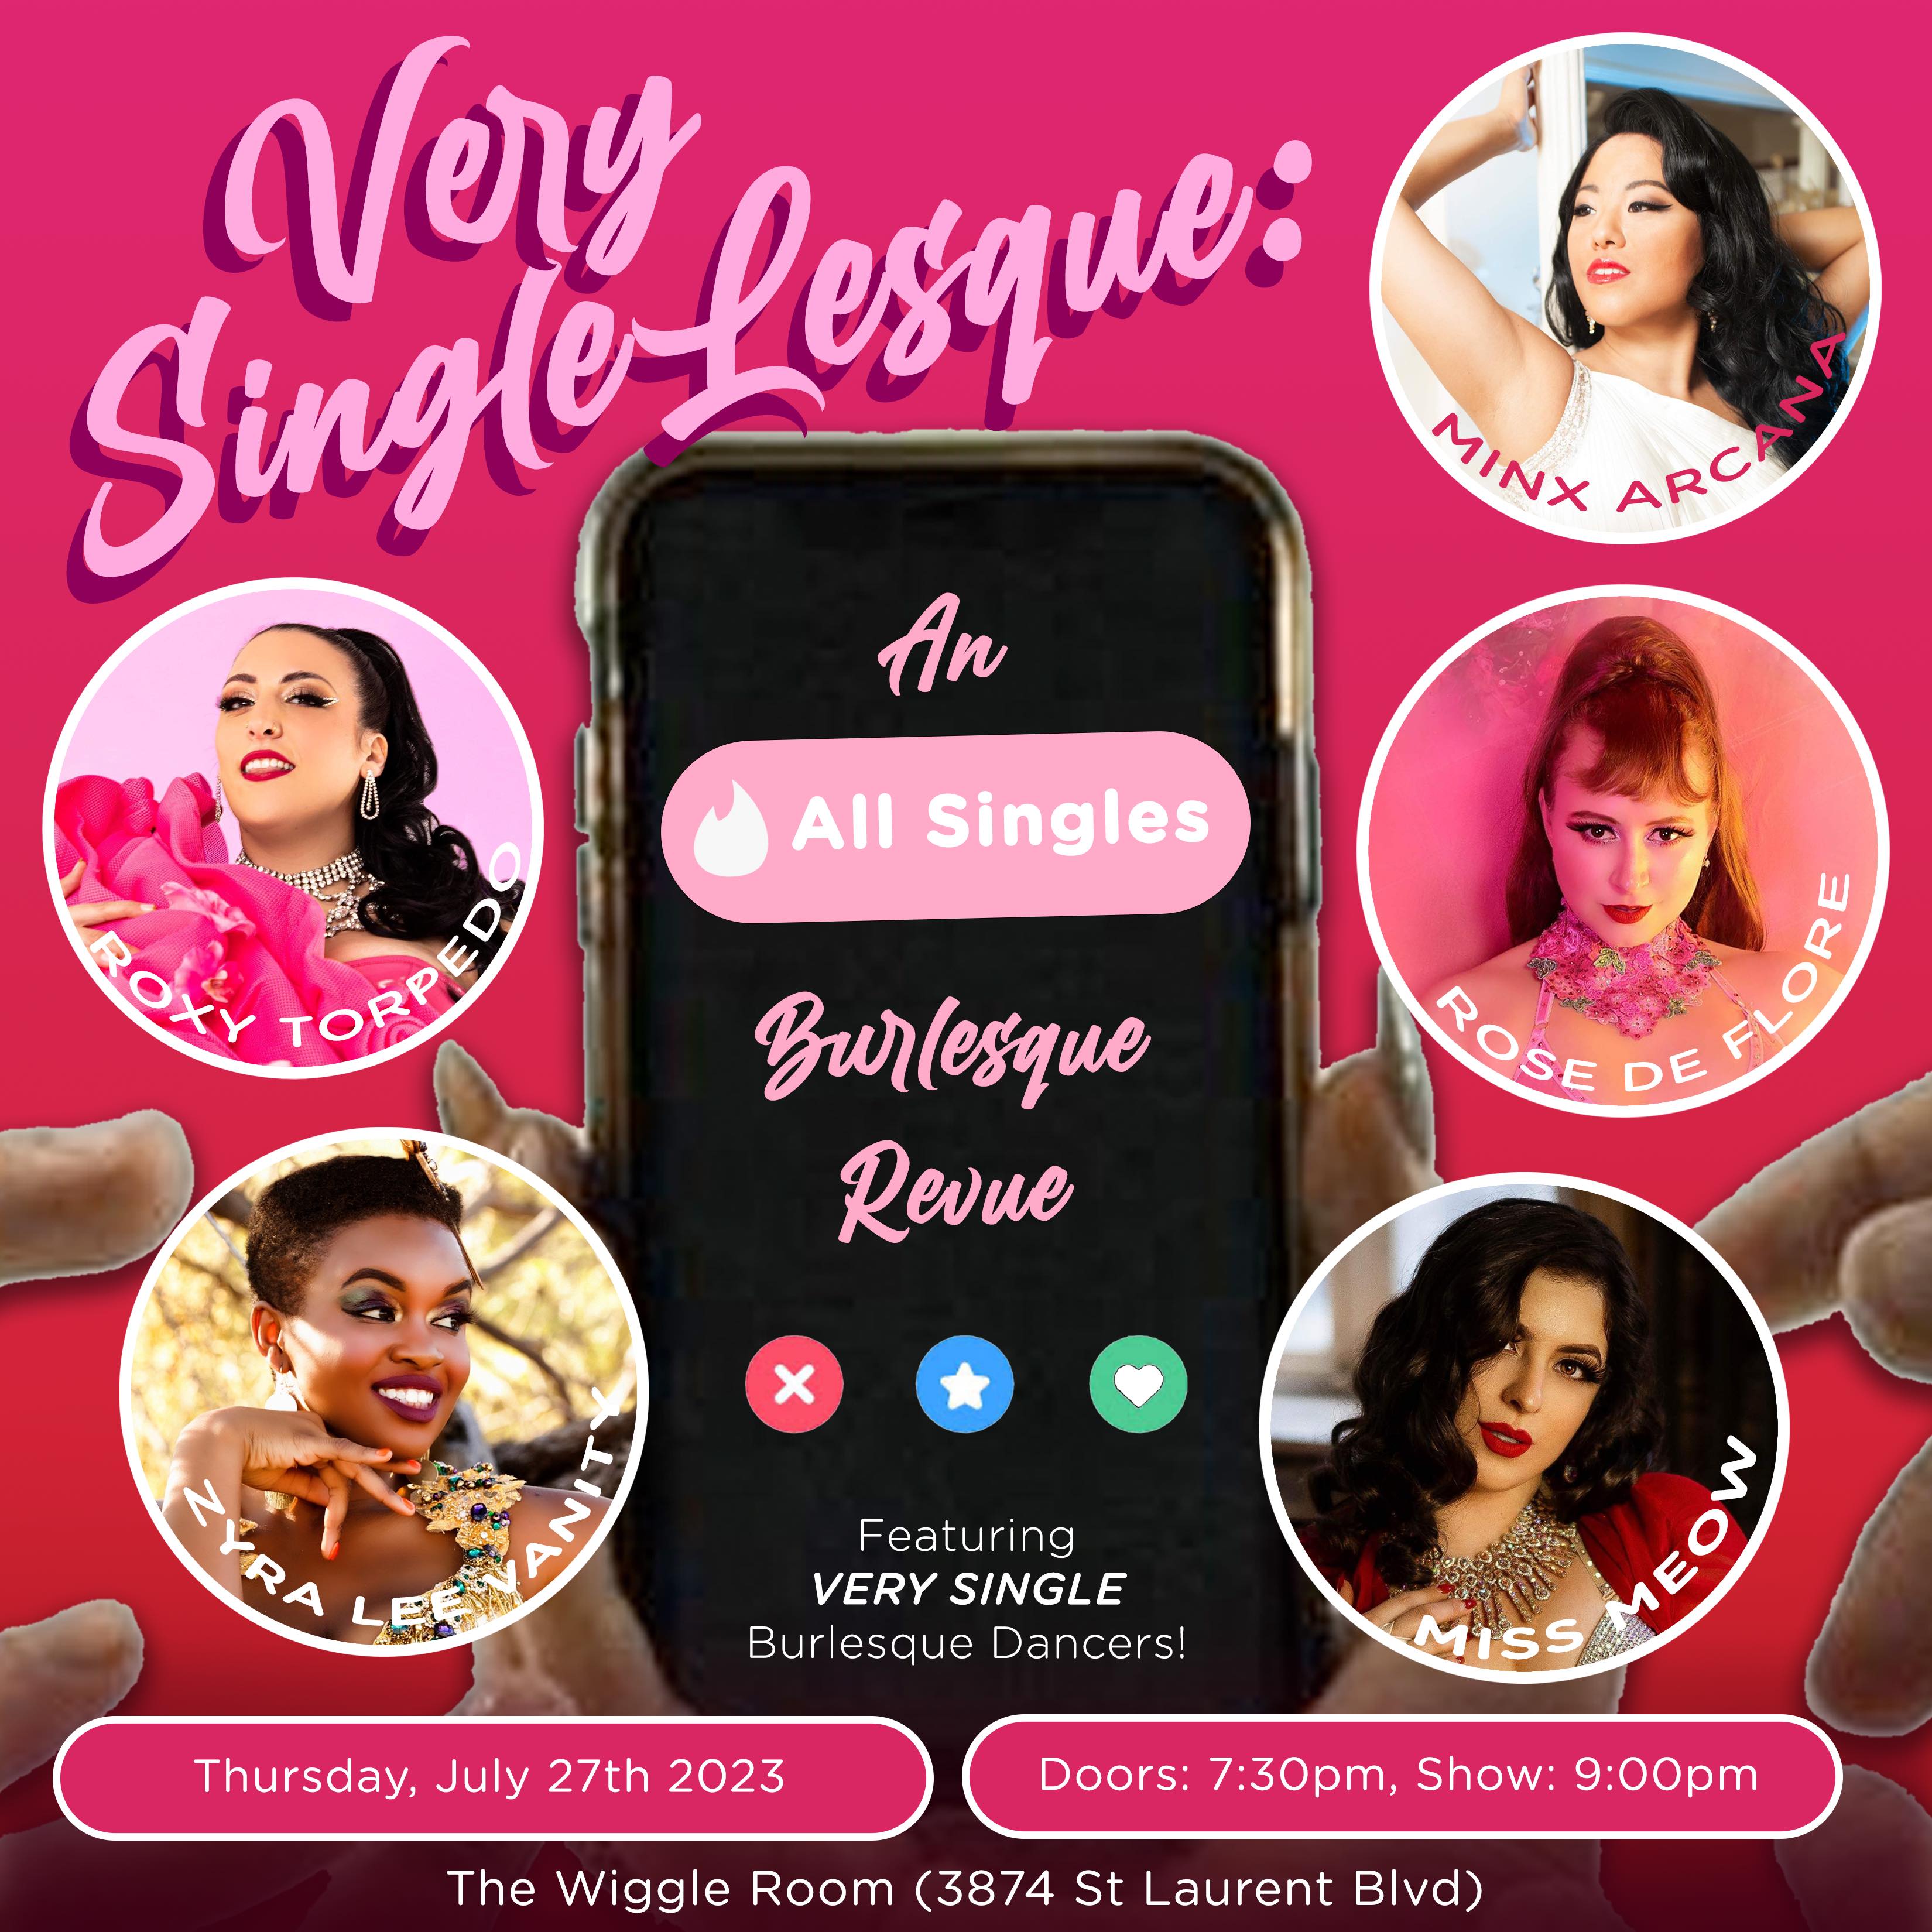 Very Single-Lesque: An All Singles Burlesque Revue